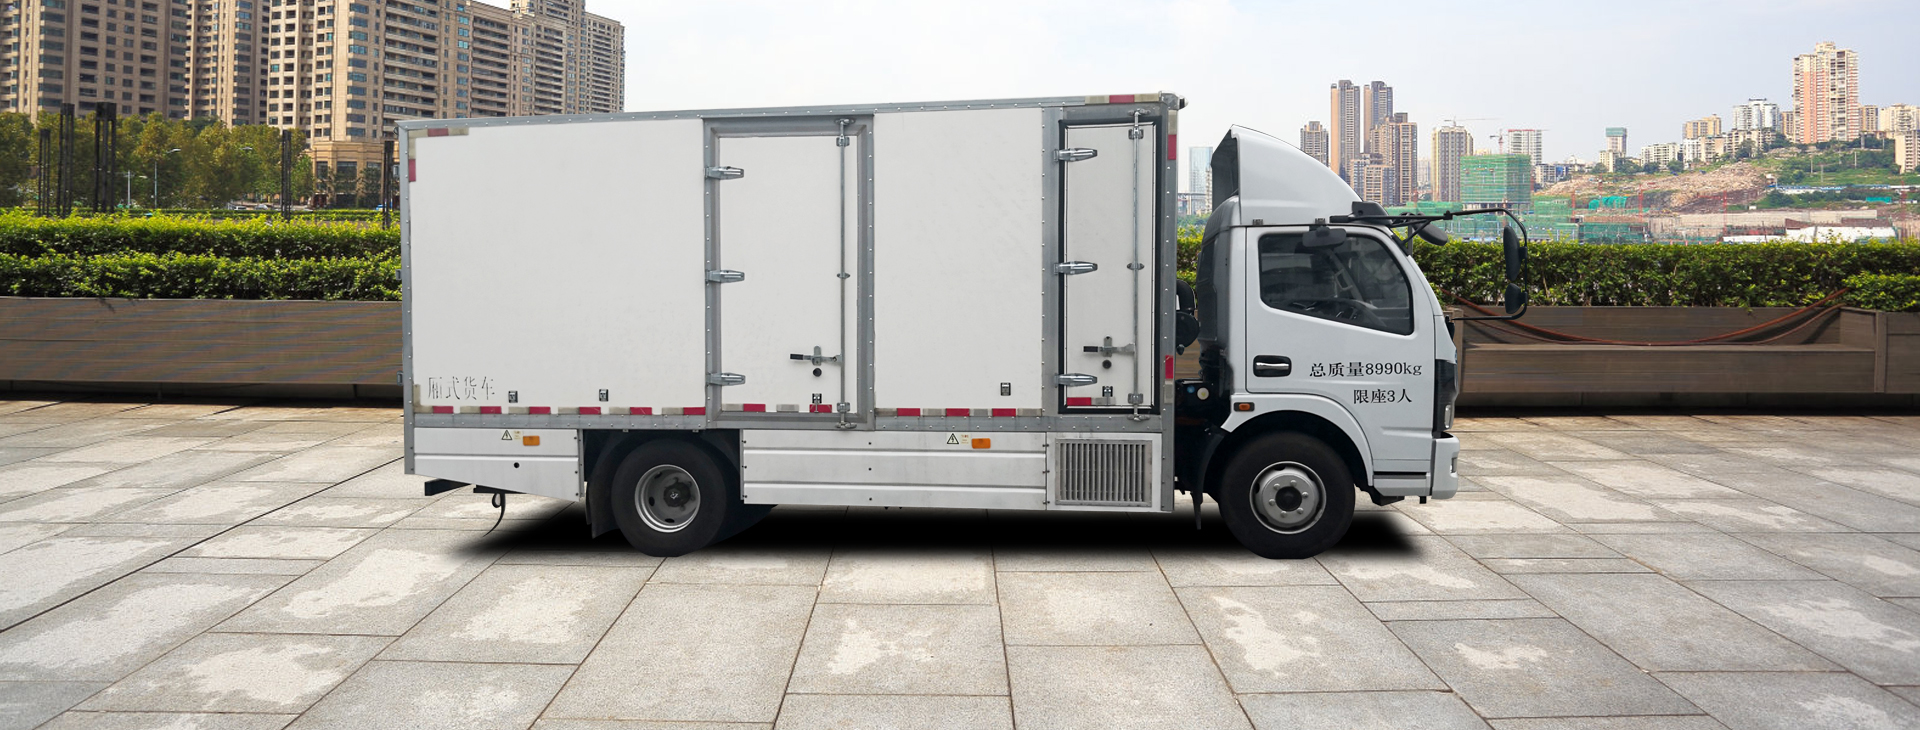 SLK5080 fuel cell van logistics vehicle